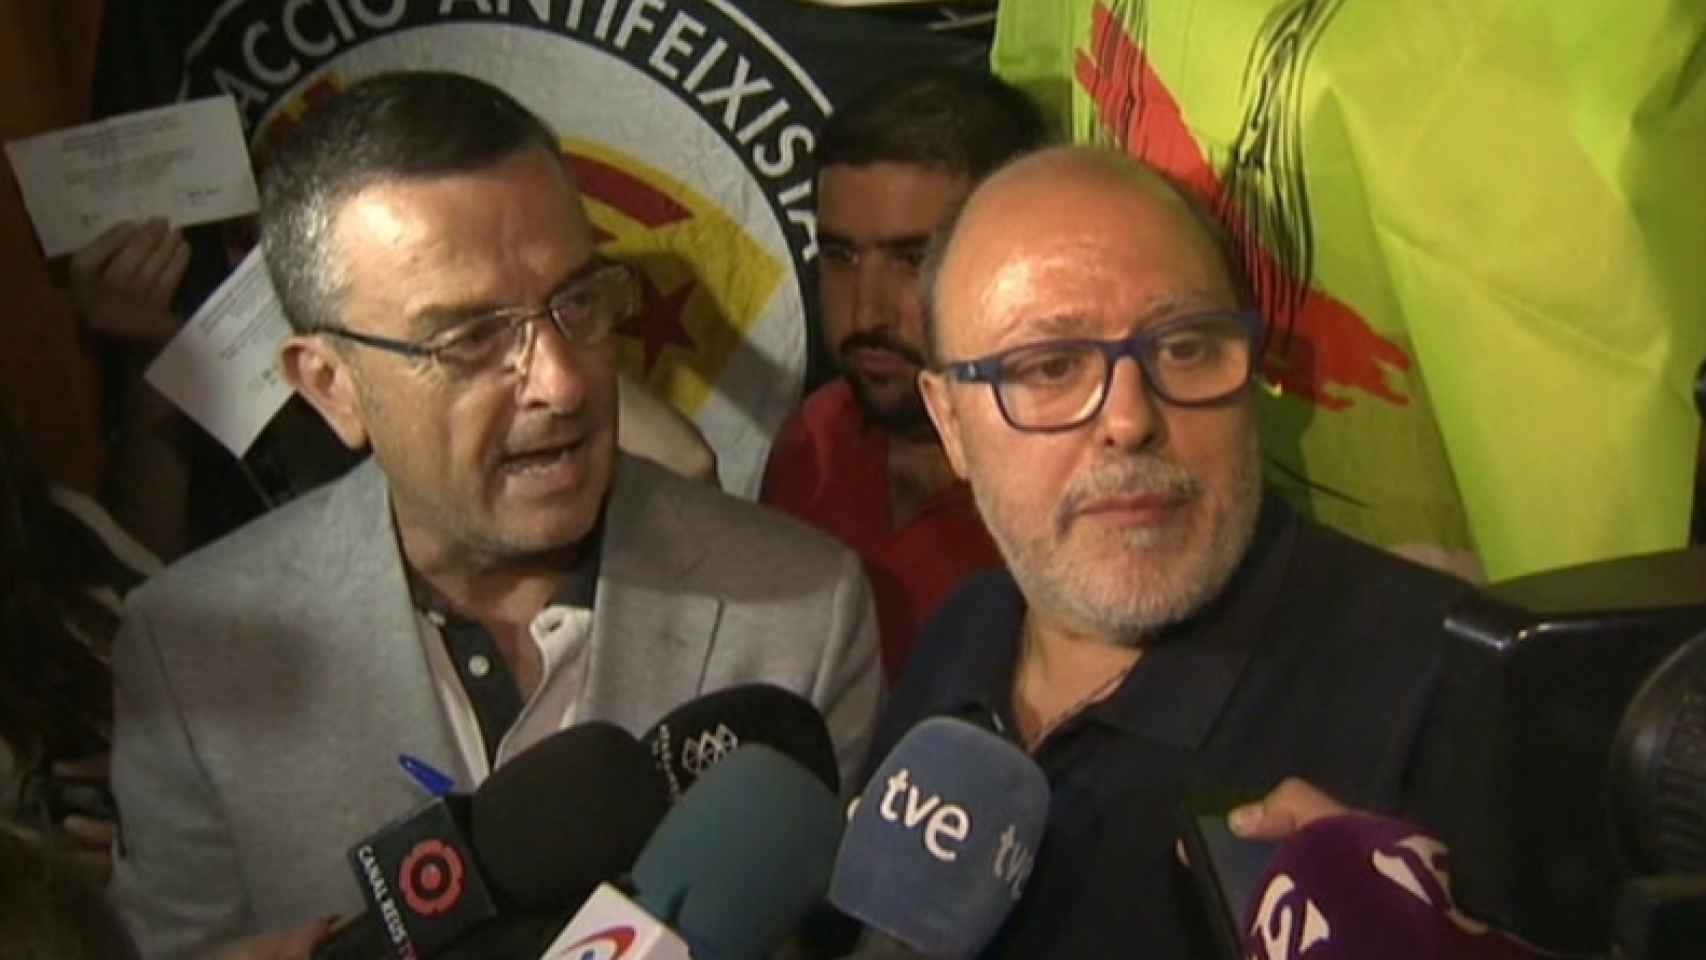 Fancesc Fàbregas, el director de 'El Vallenc' que ha sido acusado de colaborador necesario en la organización del 1-O / CG